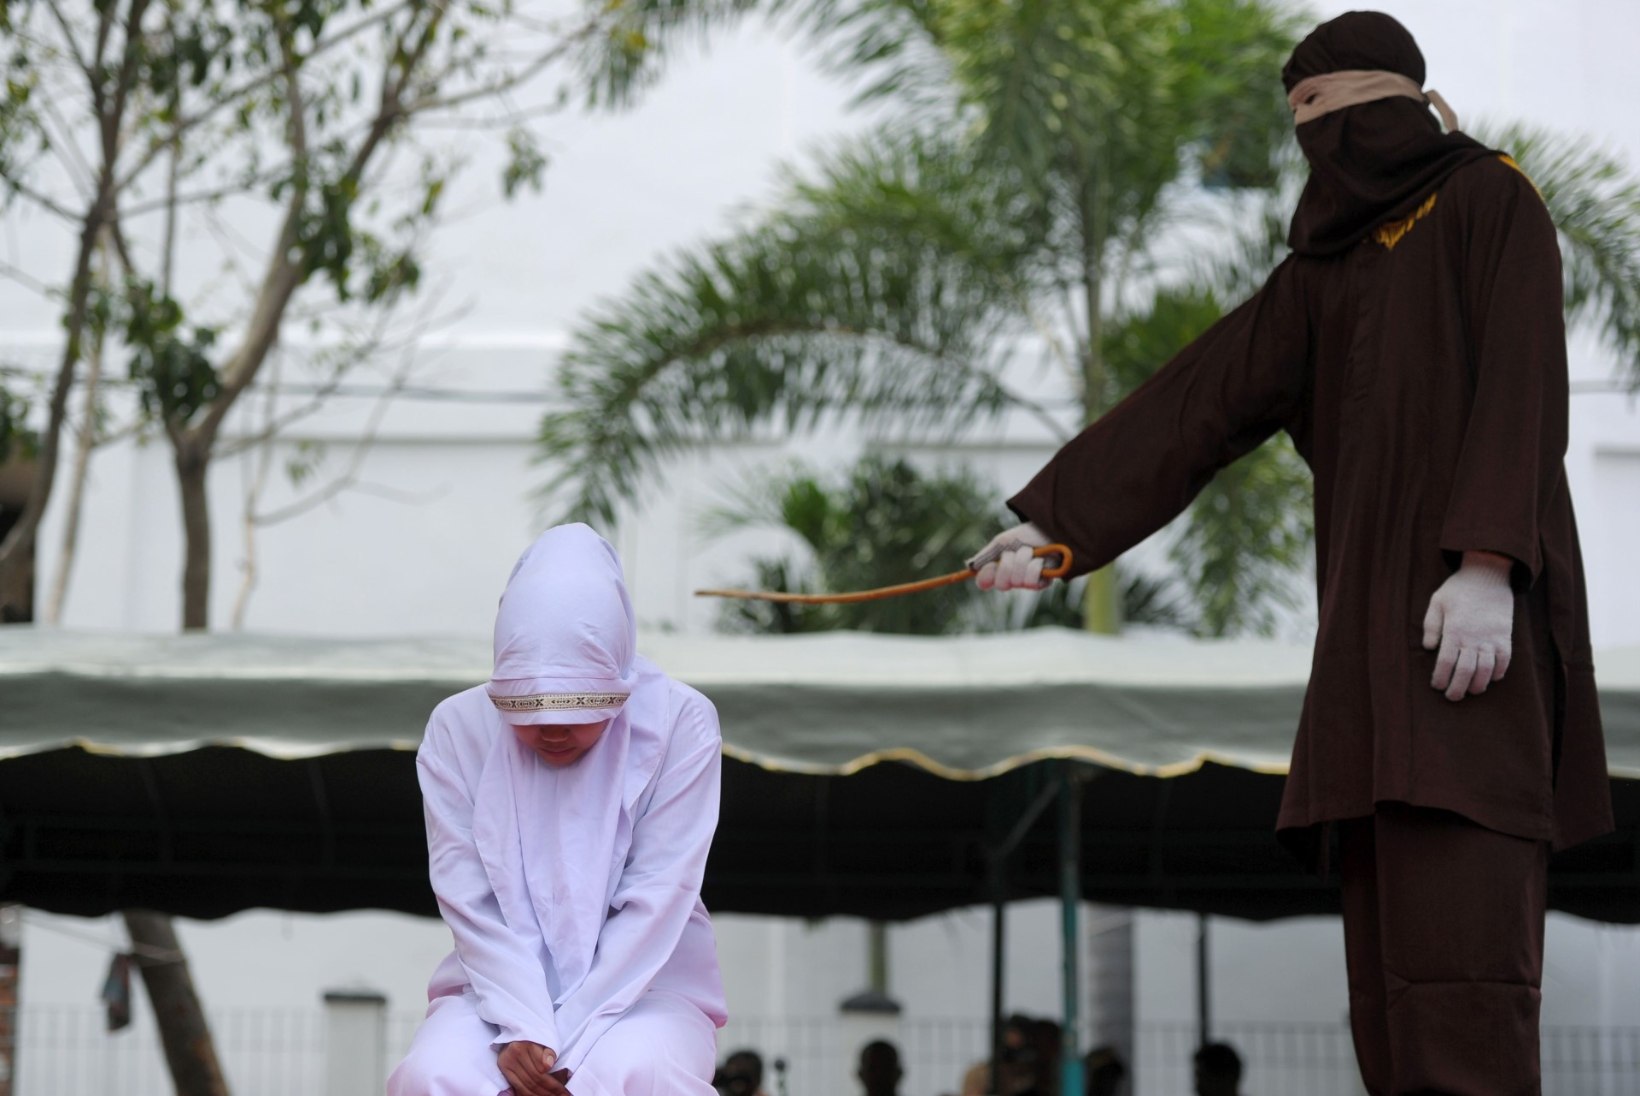 Indoneesias karistas šariaadikohus geipaari 170 kepihoobiga